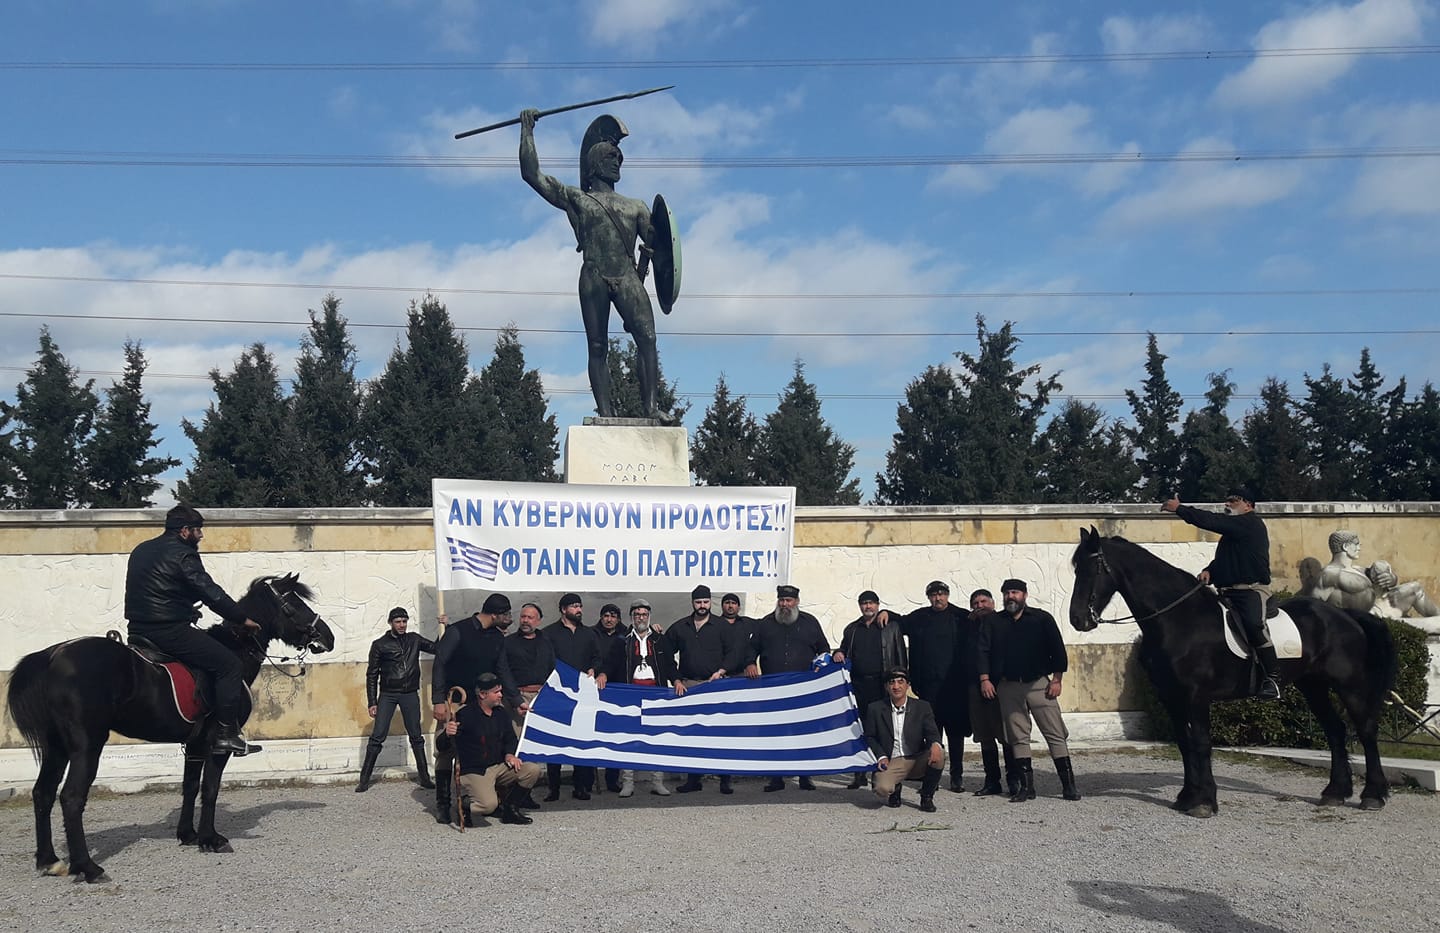 Στο άγαλμα του Λεωνίδα στις Θερμοπύλες οι αλογατάρηδες της Κρήτης – Πάνε Θεσσαλονίκη για το συλλαλητήριο (φωτό)